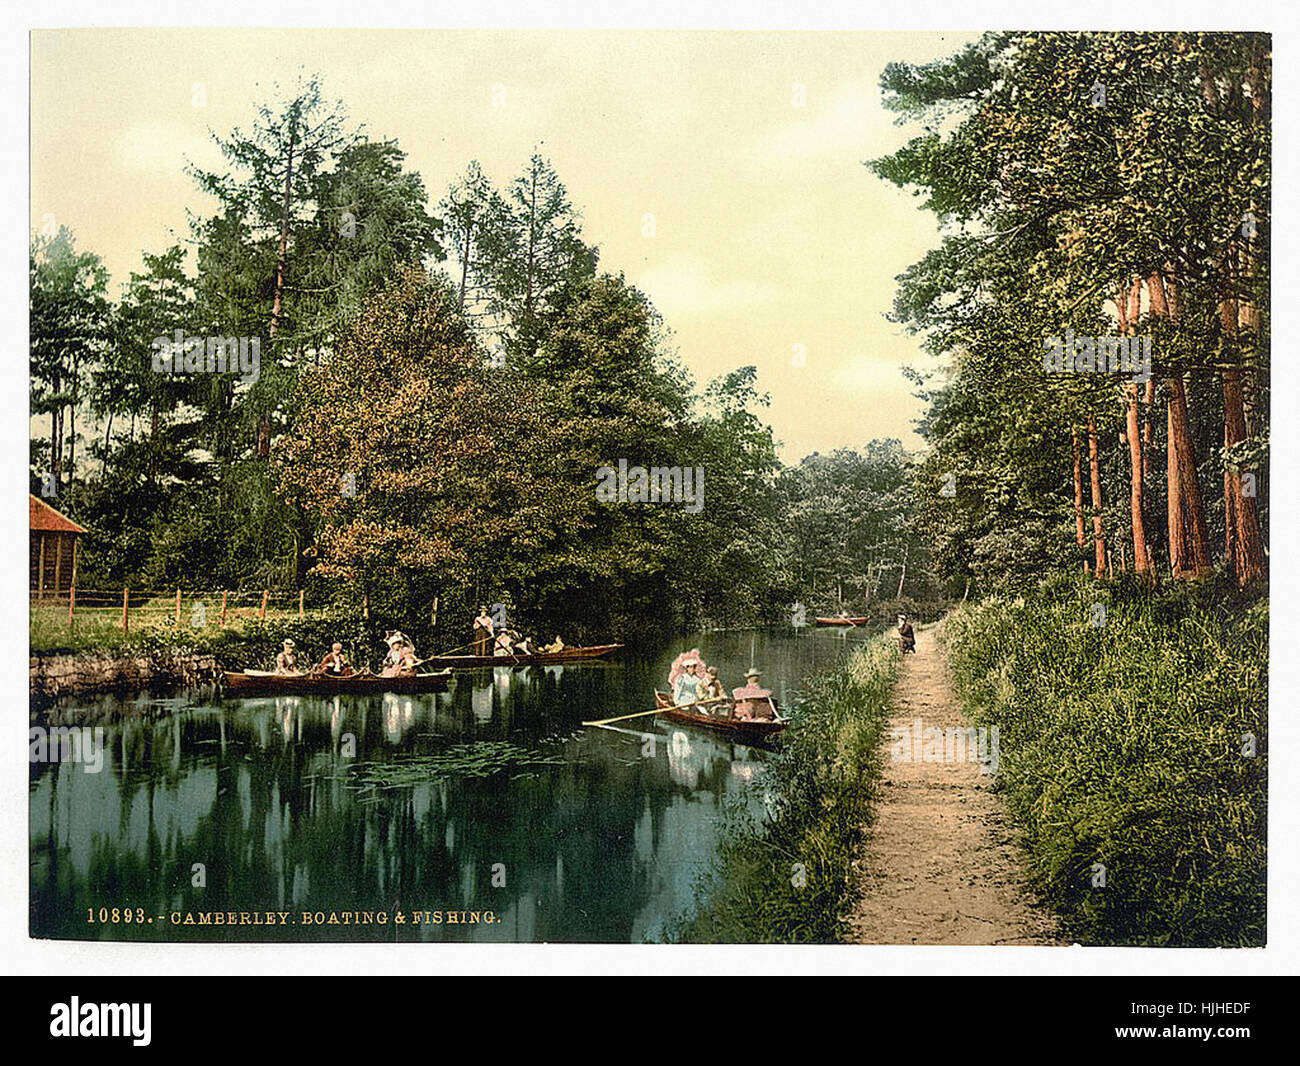 La navigation de plaisance et la pêche, Camberley, Angleterre - Photochrom xixème siècle Banque D'Images